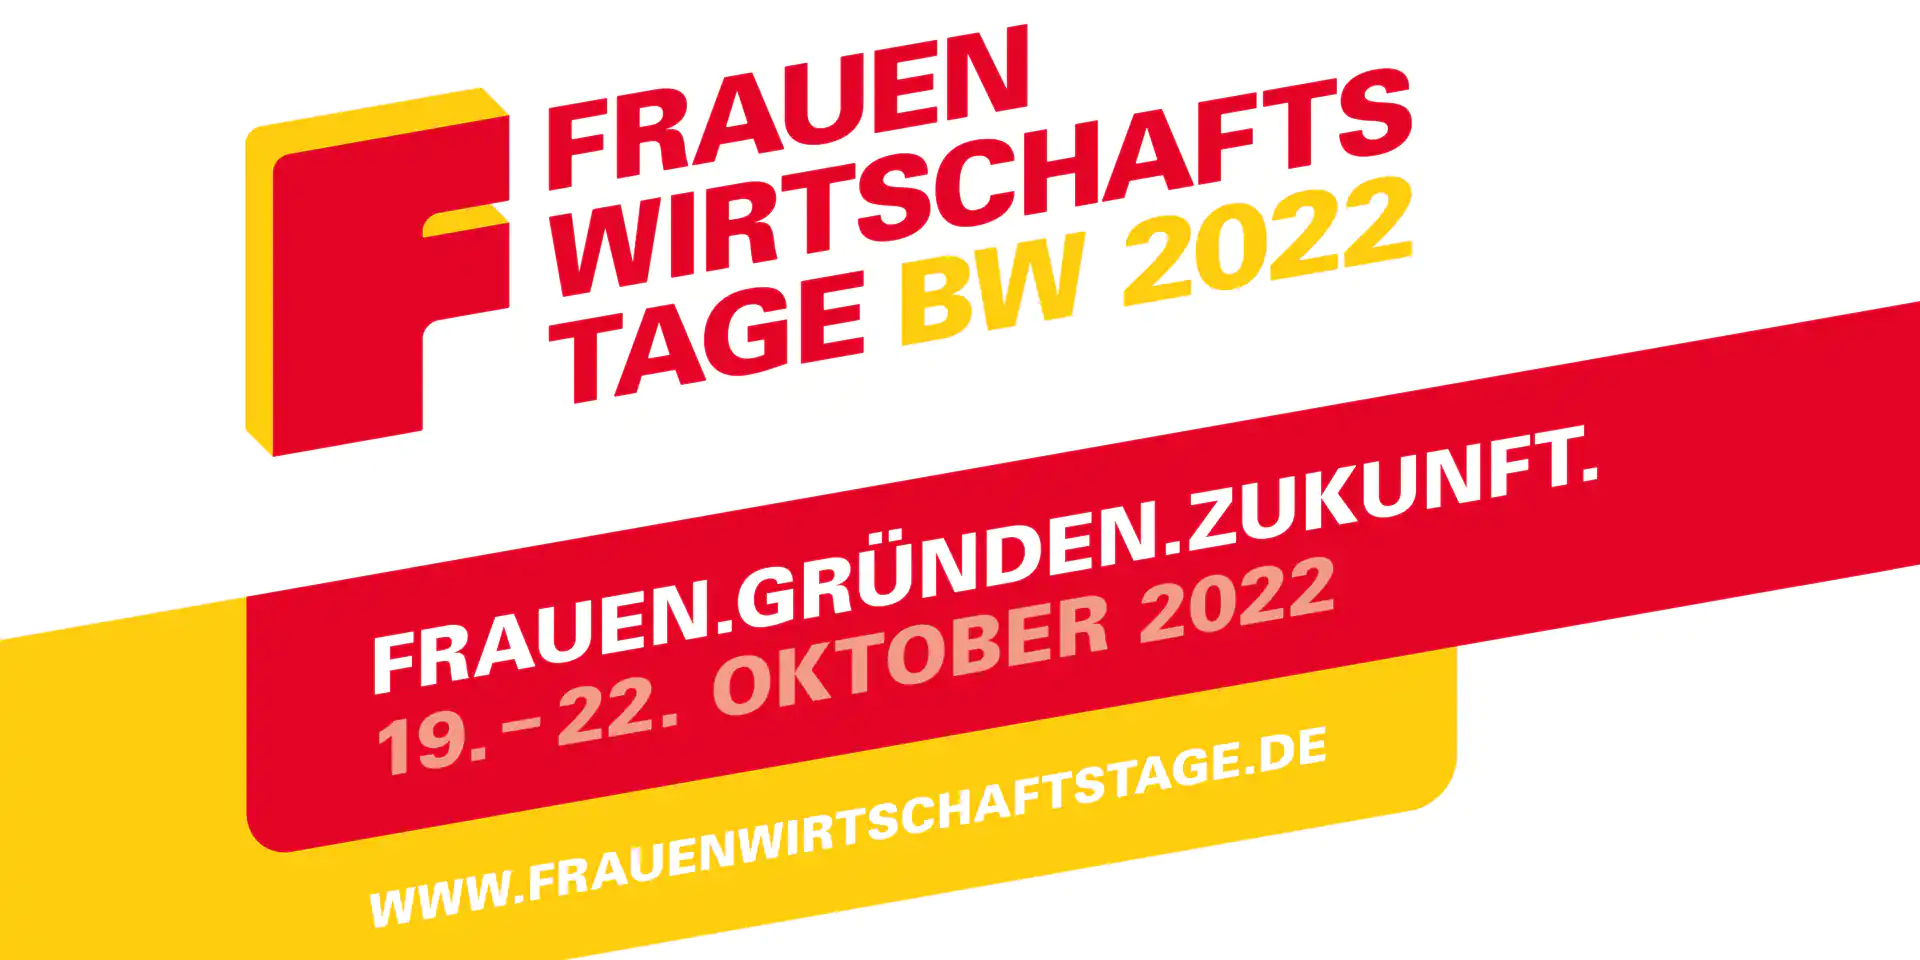 Elevator Pitch Workshop, Female Founders Night und Podiumsdiskussion - Frauenwirtschaftstage 2022 in Reutlingen